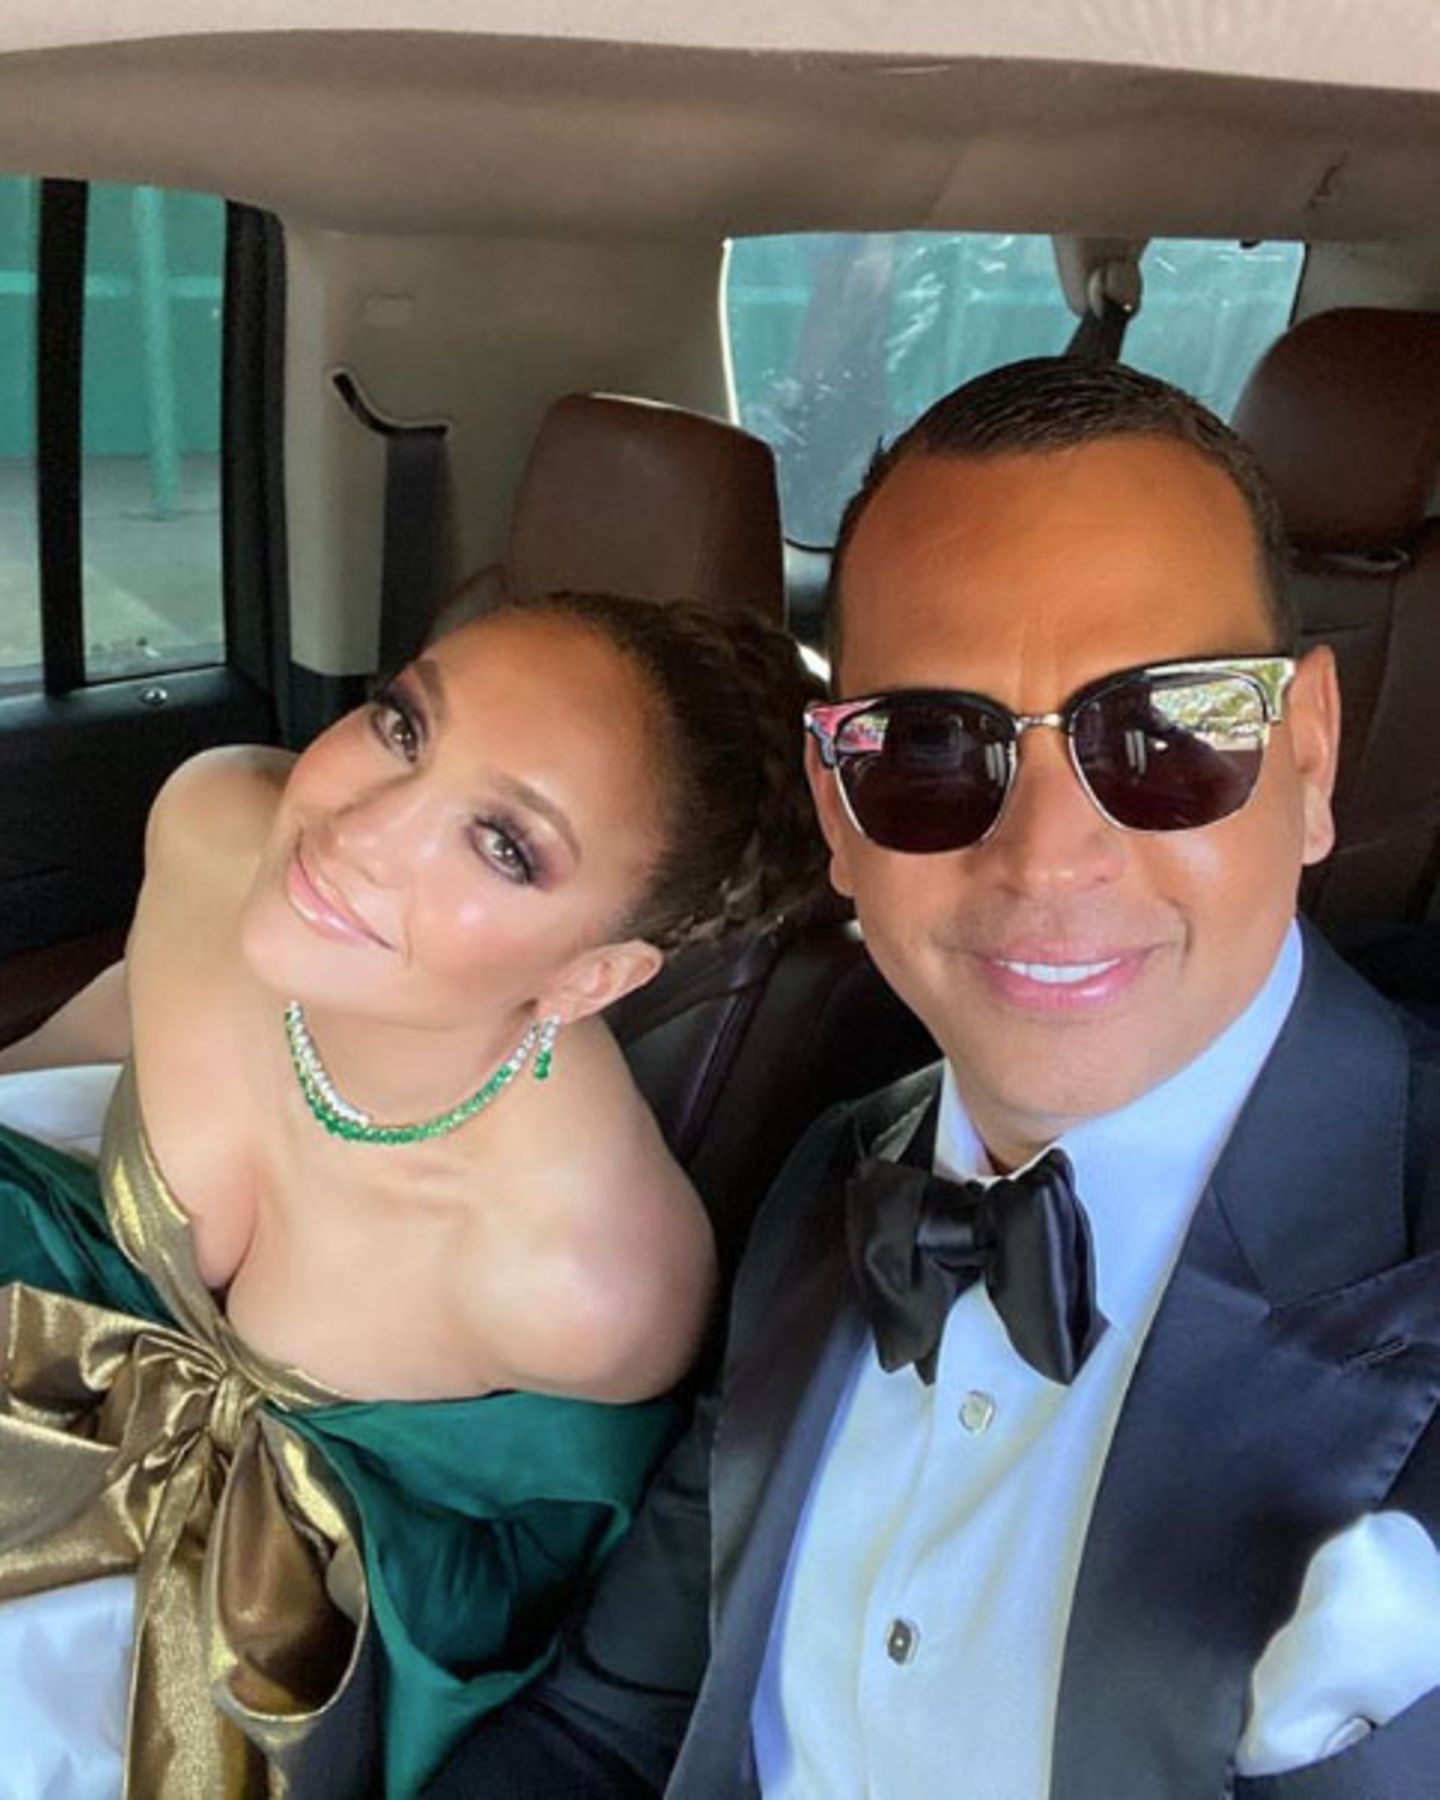 Auf den Weg zu der Verleihung der Golden Globes nehmen sich Jennifer Lopez und ihr Verlobter Alex Rodriguez noch einen kurzen Moment Zeit für ein süßes Pärchen-Selfie. Auch wenn J.Lo am Ende keinen Award für "Hustlers" bekommt, ihren Hauptgewinn hat sie bereits an ihrer Seite.